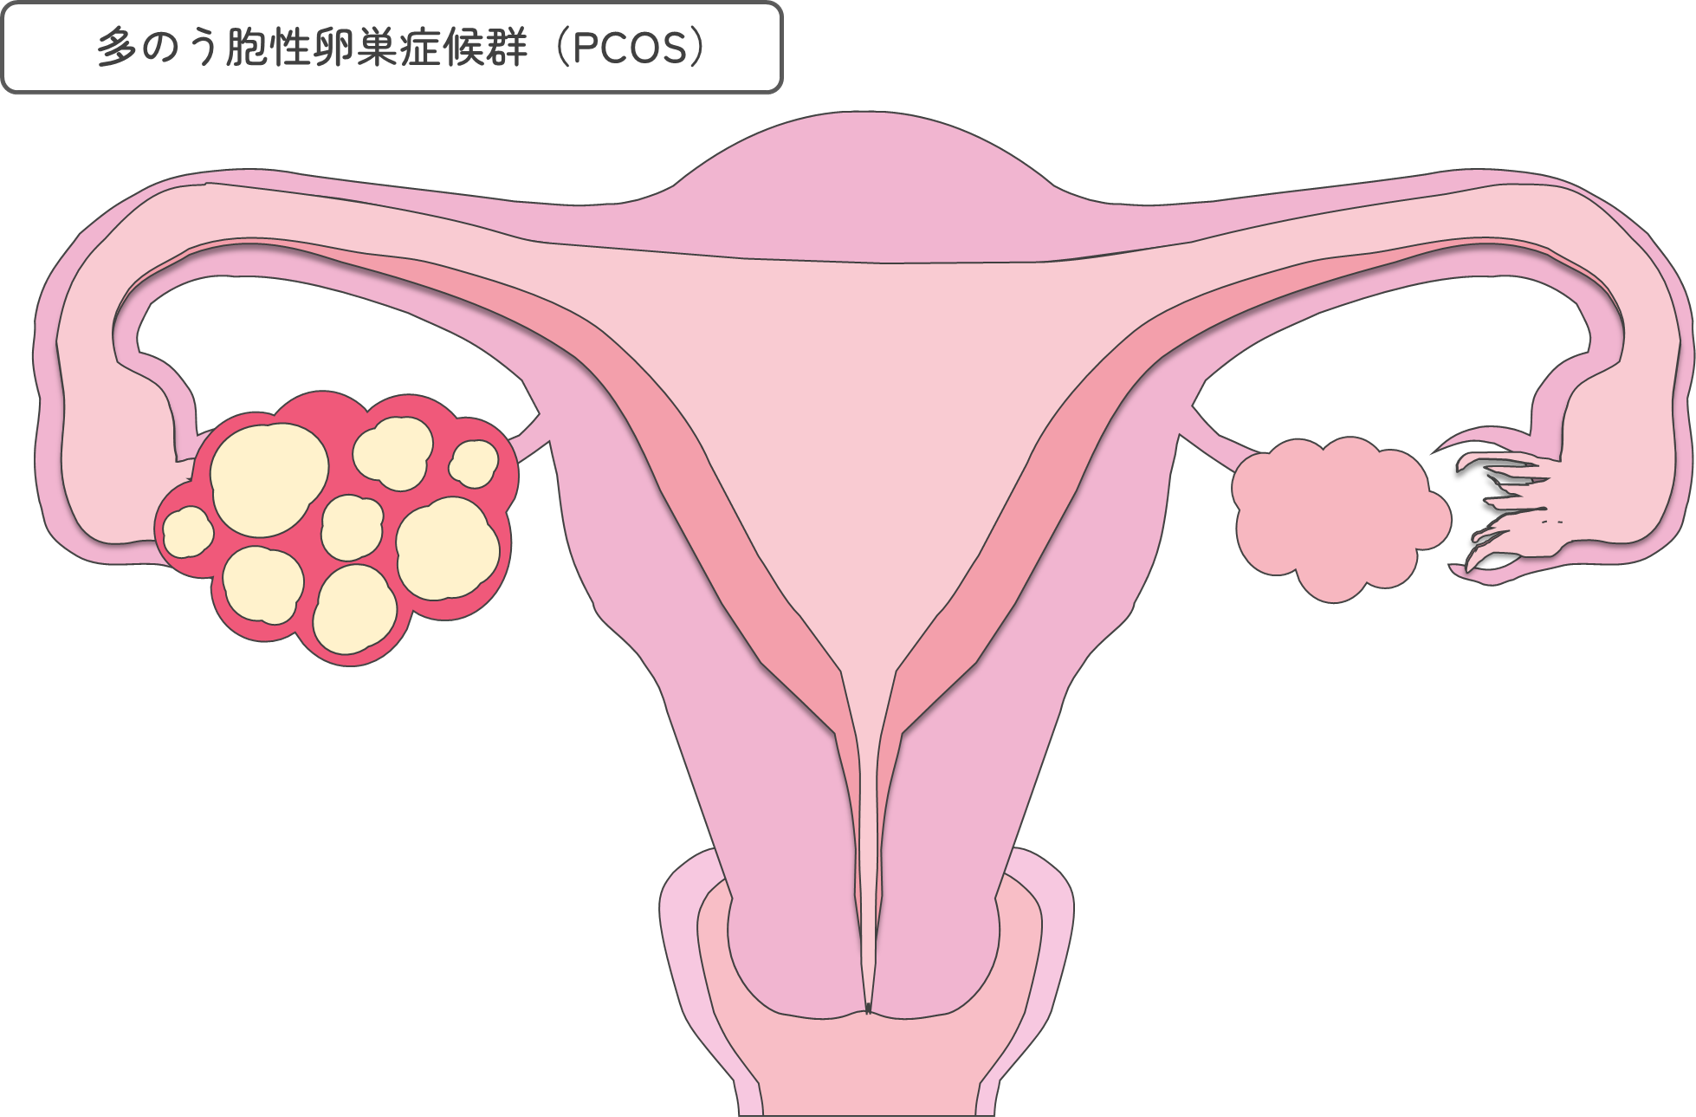 多嚢胞性卵巣症候群(PCOS)について